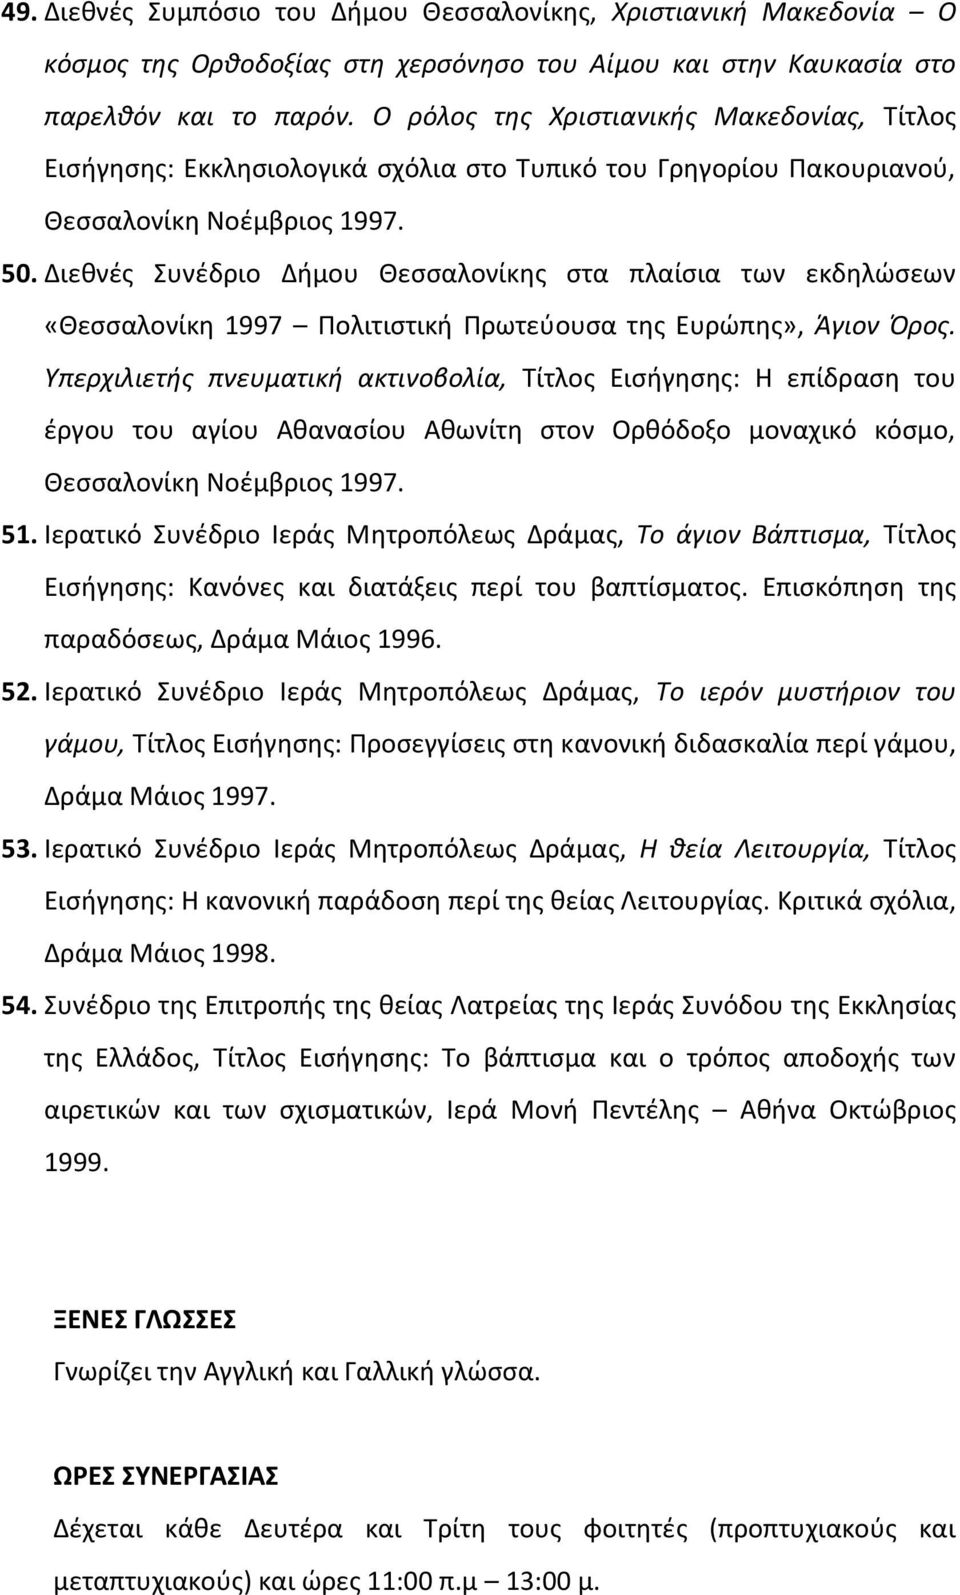 Διεθνές Συνέδριο Δήμου Θεσσαλονίκης στα πλαίσια των εκδηλώσεων «Θεσσαλονίκη 1997 Πολιτιστική Πρωτεύουσα της Ευρώπης», Άγιον Όρος.